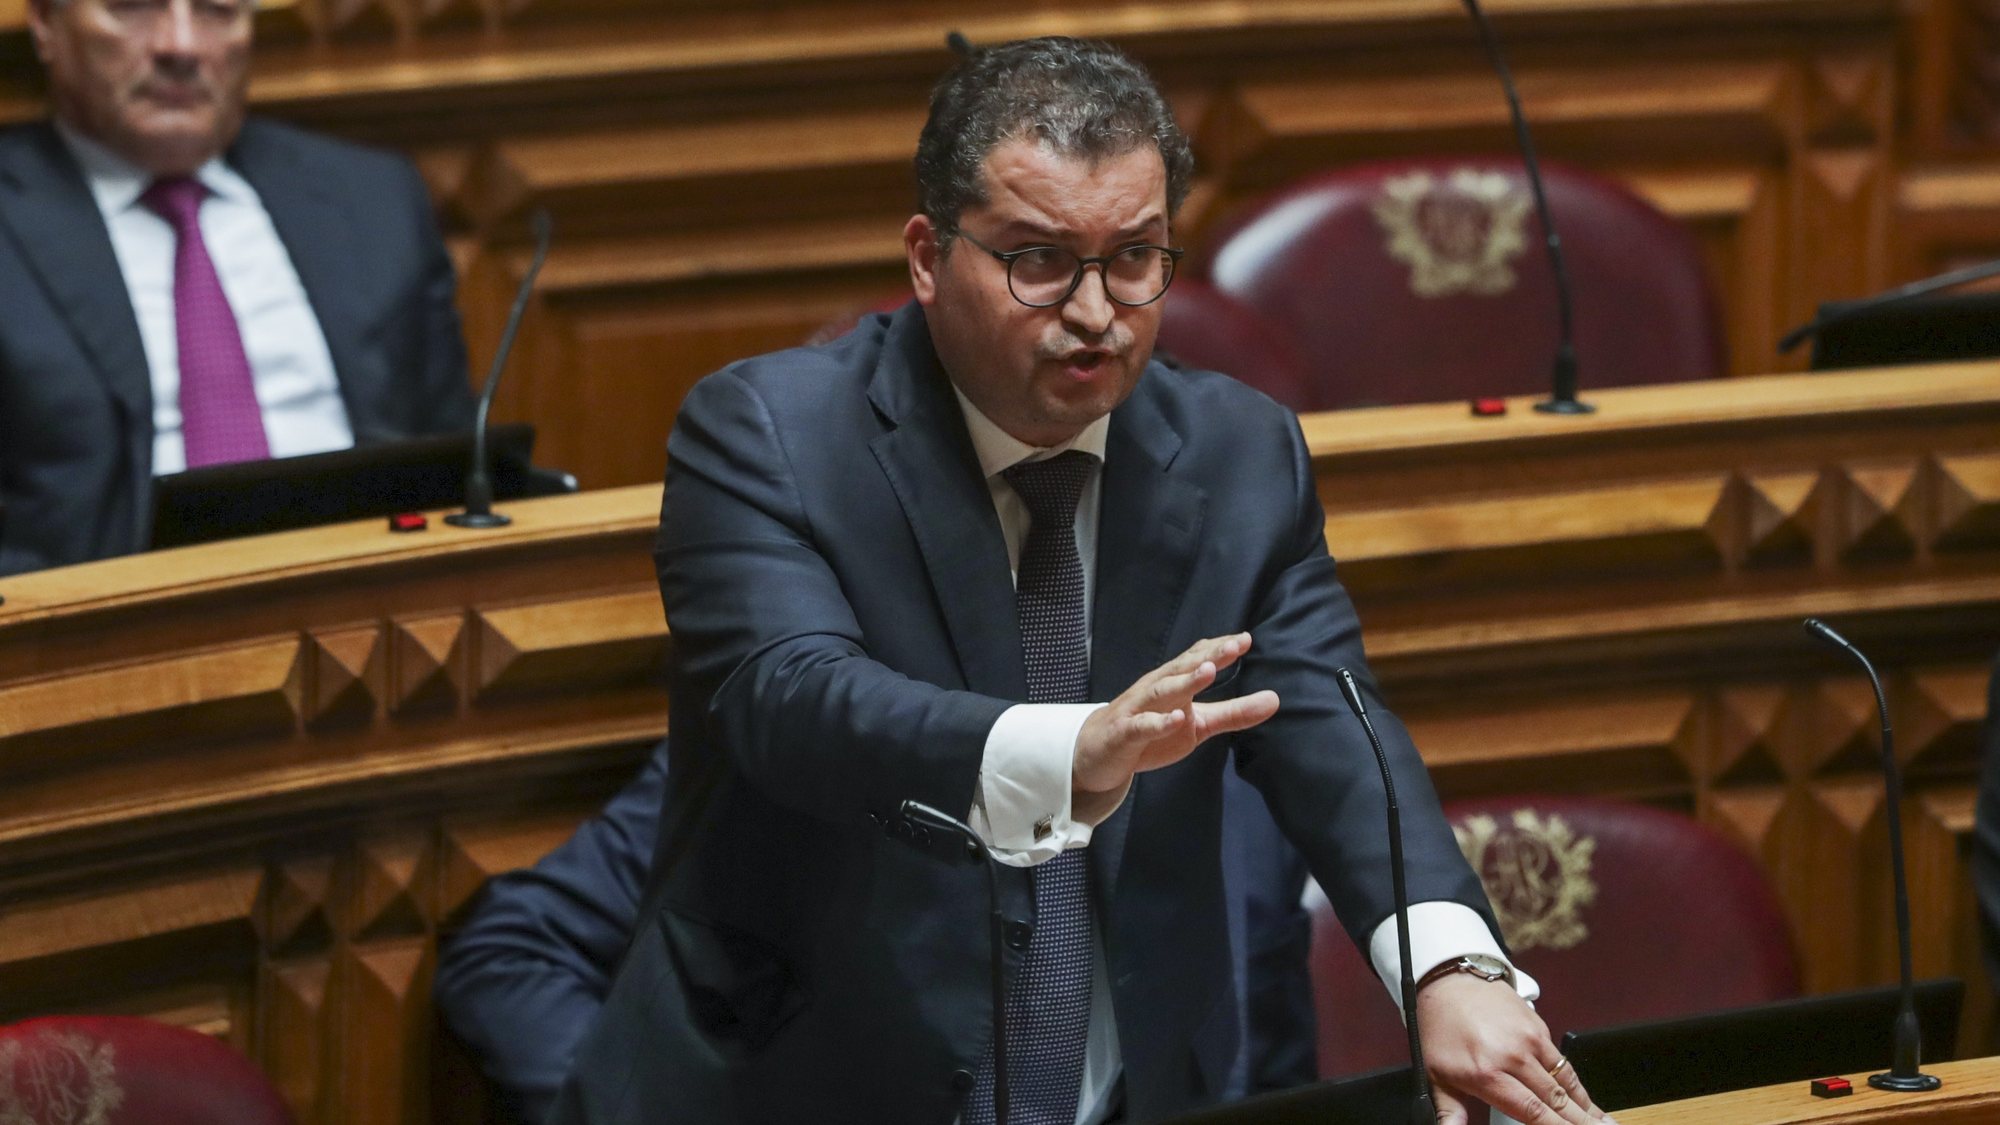 O deputado do Partido Social Democrata (PSD), Joaquim Miranda Sarmento, intervém durante o debate sobre habitação na Comissão Permanente na Assembleia da República em Lisboa, 07 de setembro 2022. TIAGO PETINGA/LUSA